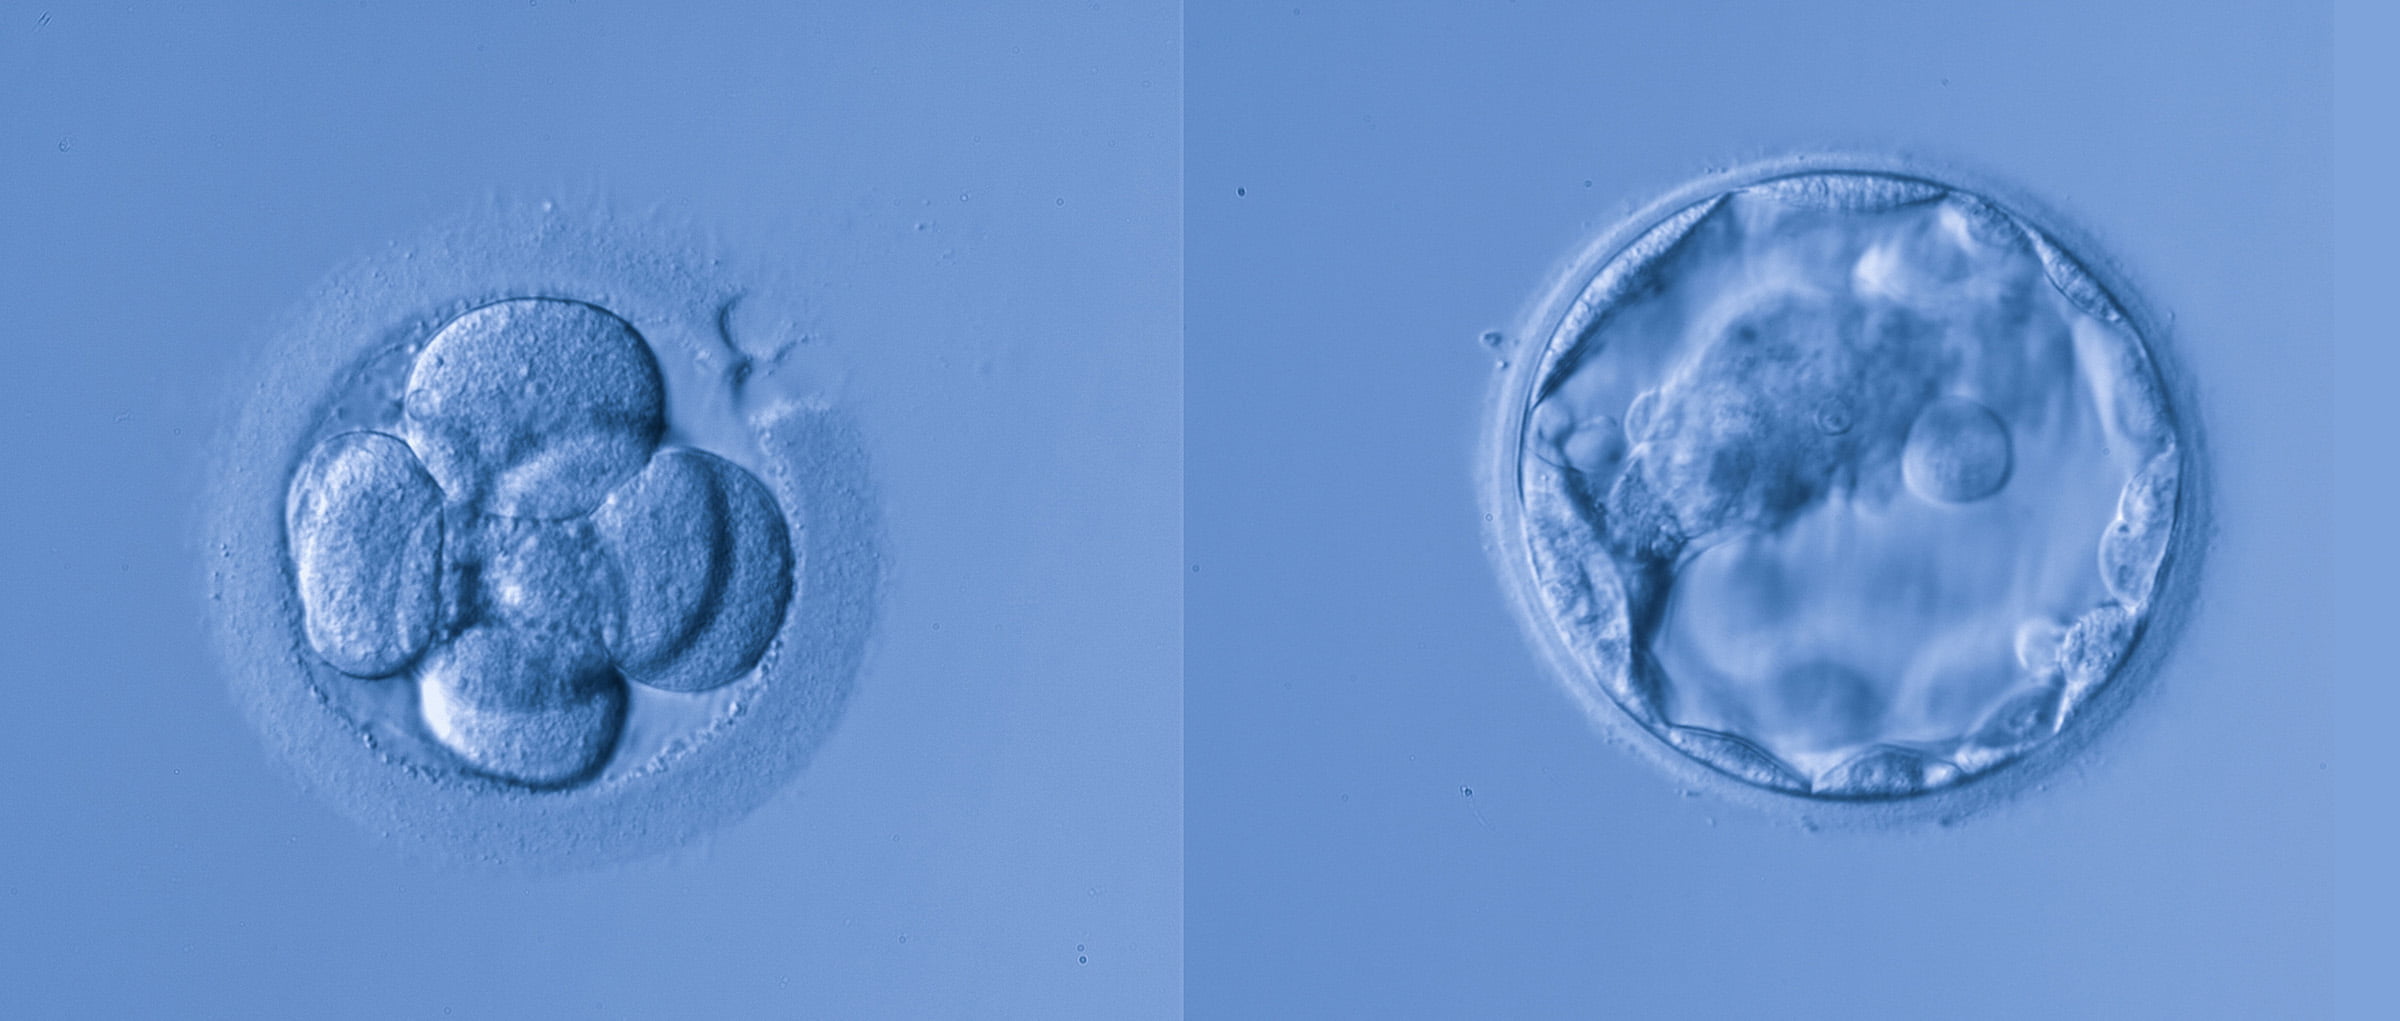 Ver el desarrollo embrionario